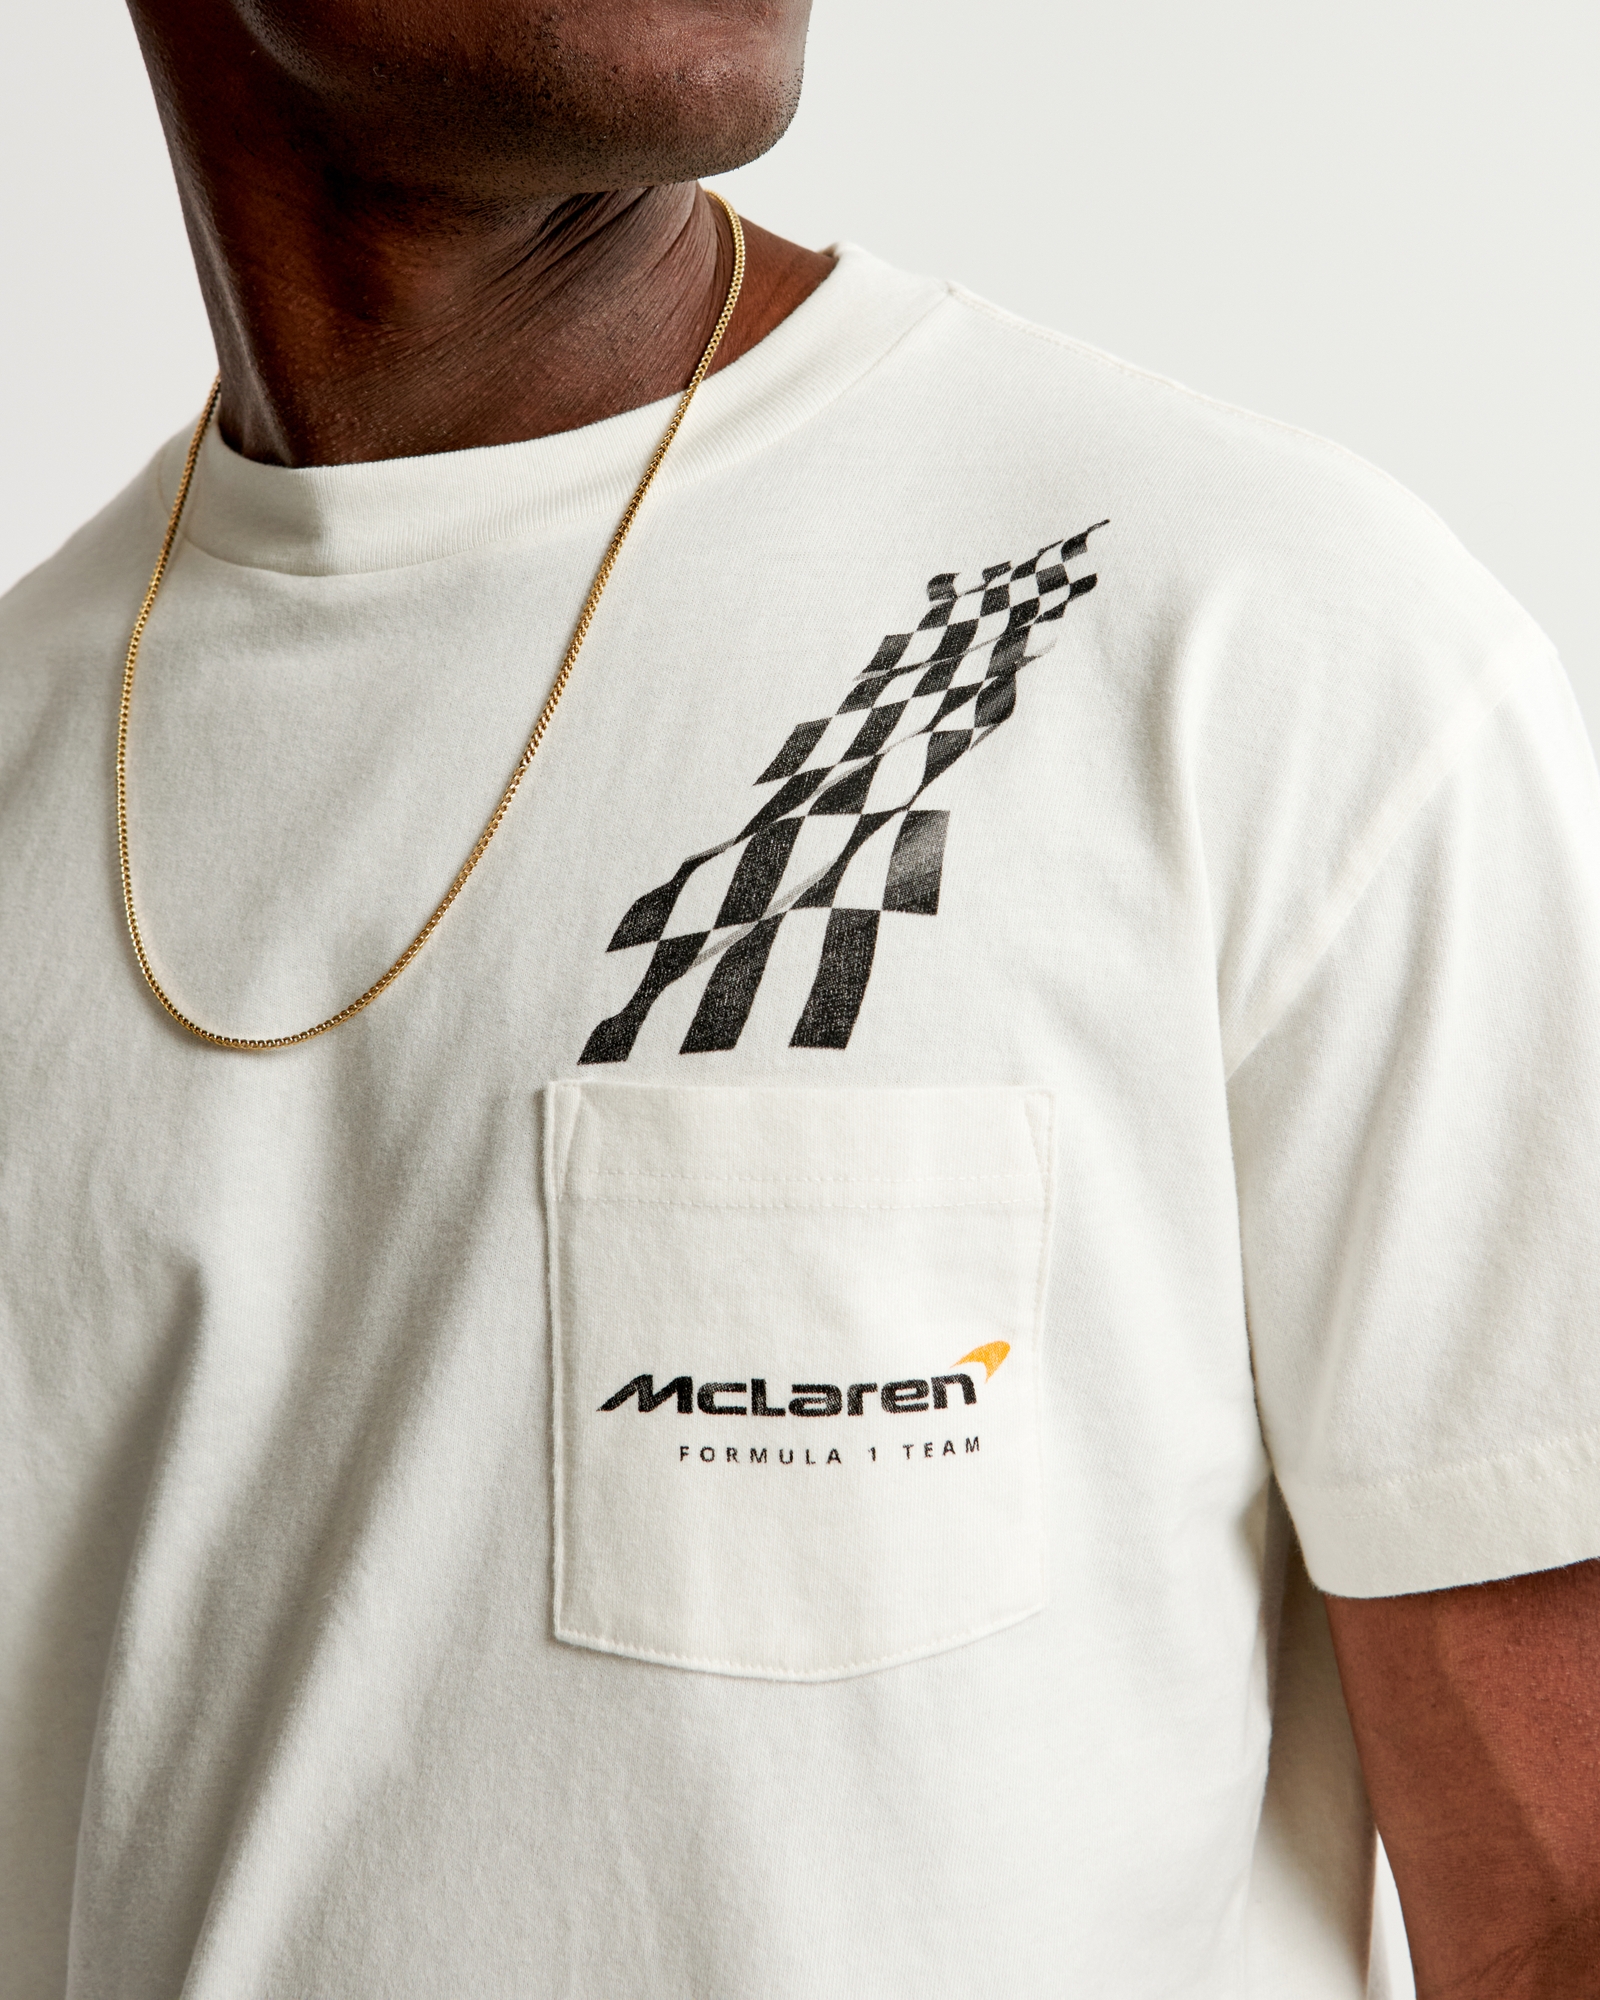 McLaren Graphic Tee